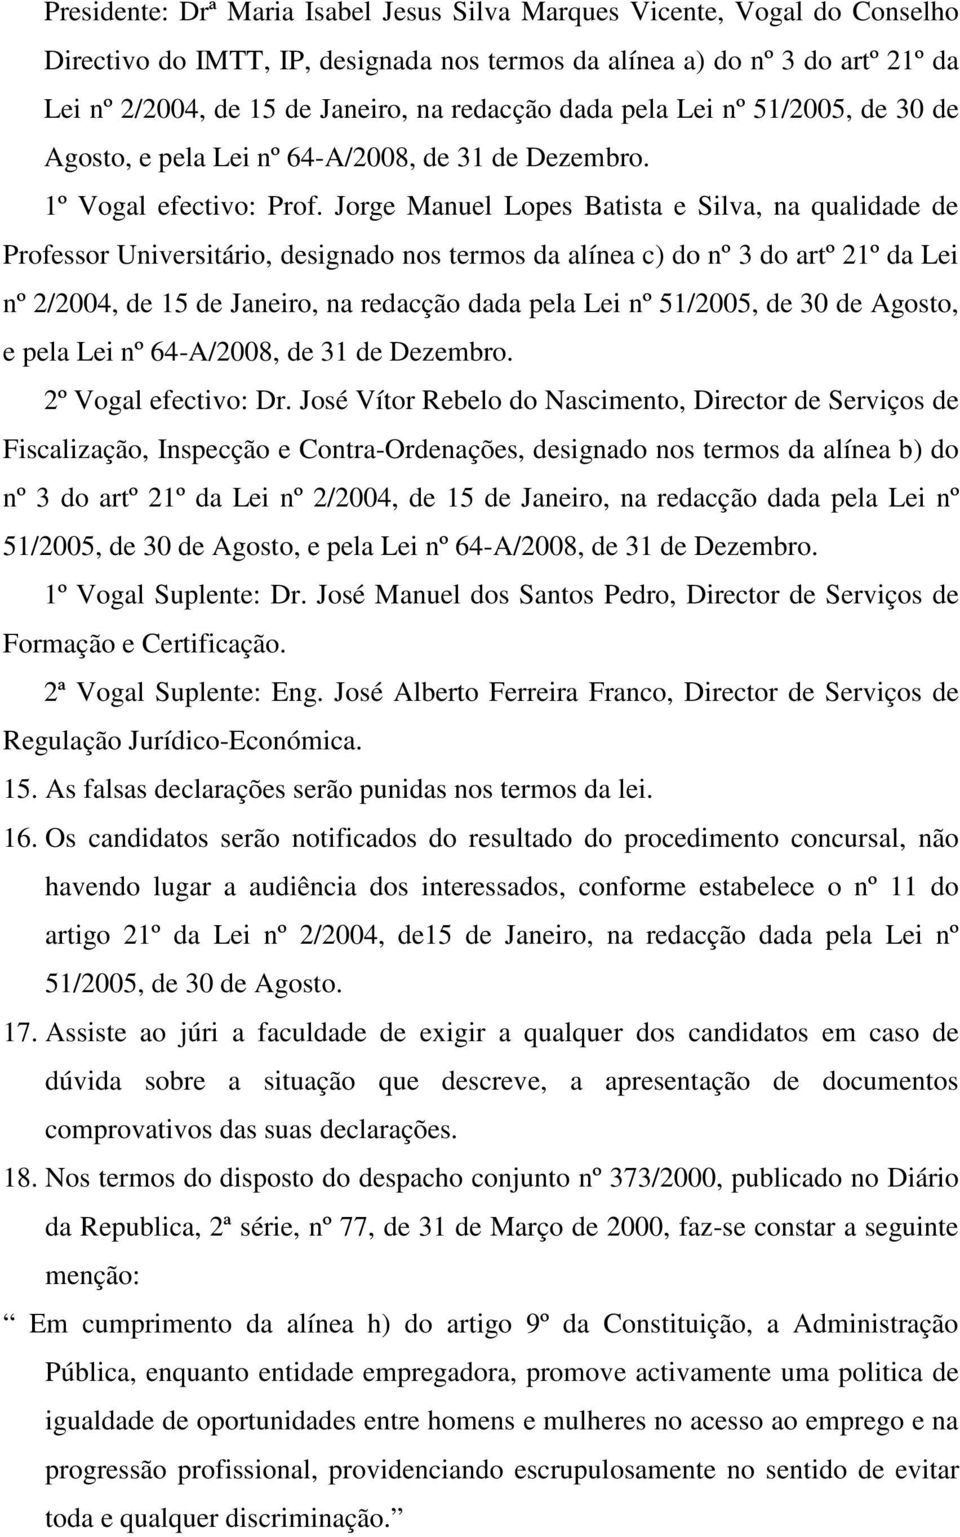 Jorge Manuel Lopes Batista e Silva, na qualidade de Professor Universitário, designado nos termos da alínea c) do nº 3 do artº 21º da Lei nº 2/2004, de 15 de Janeiro, na redacção dada pela Lei nº